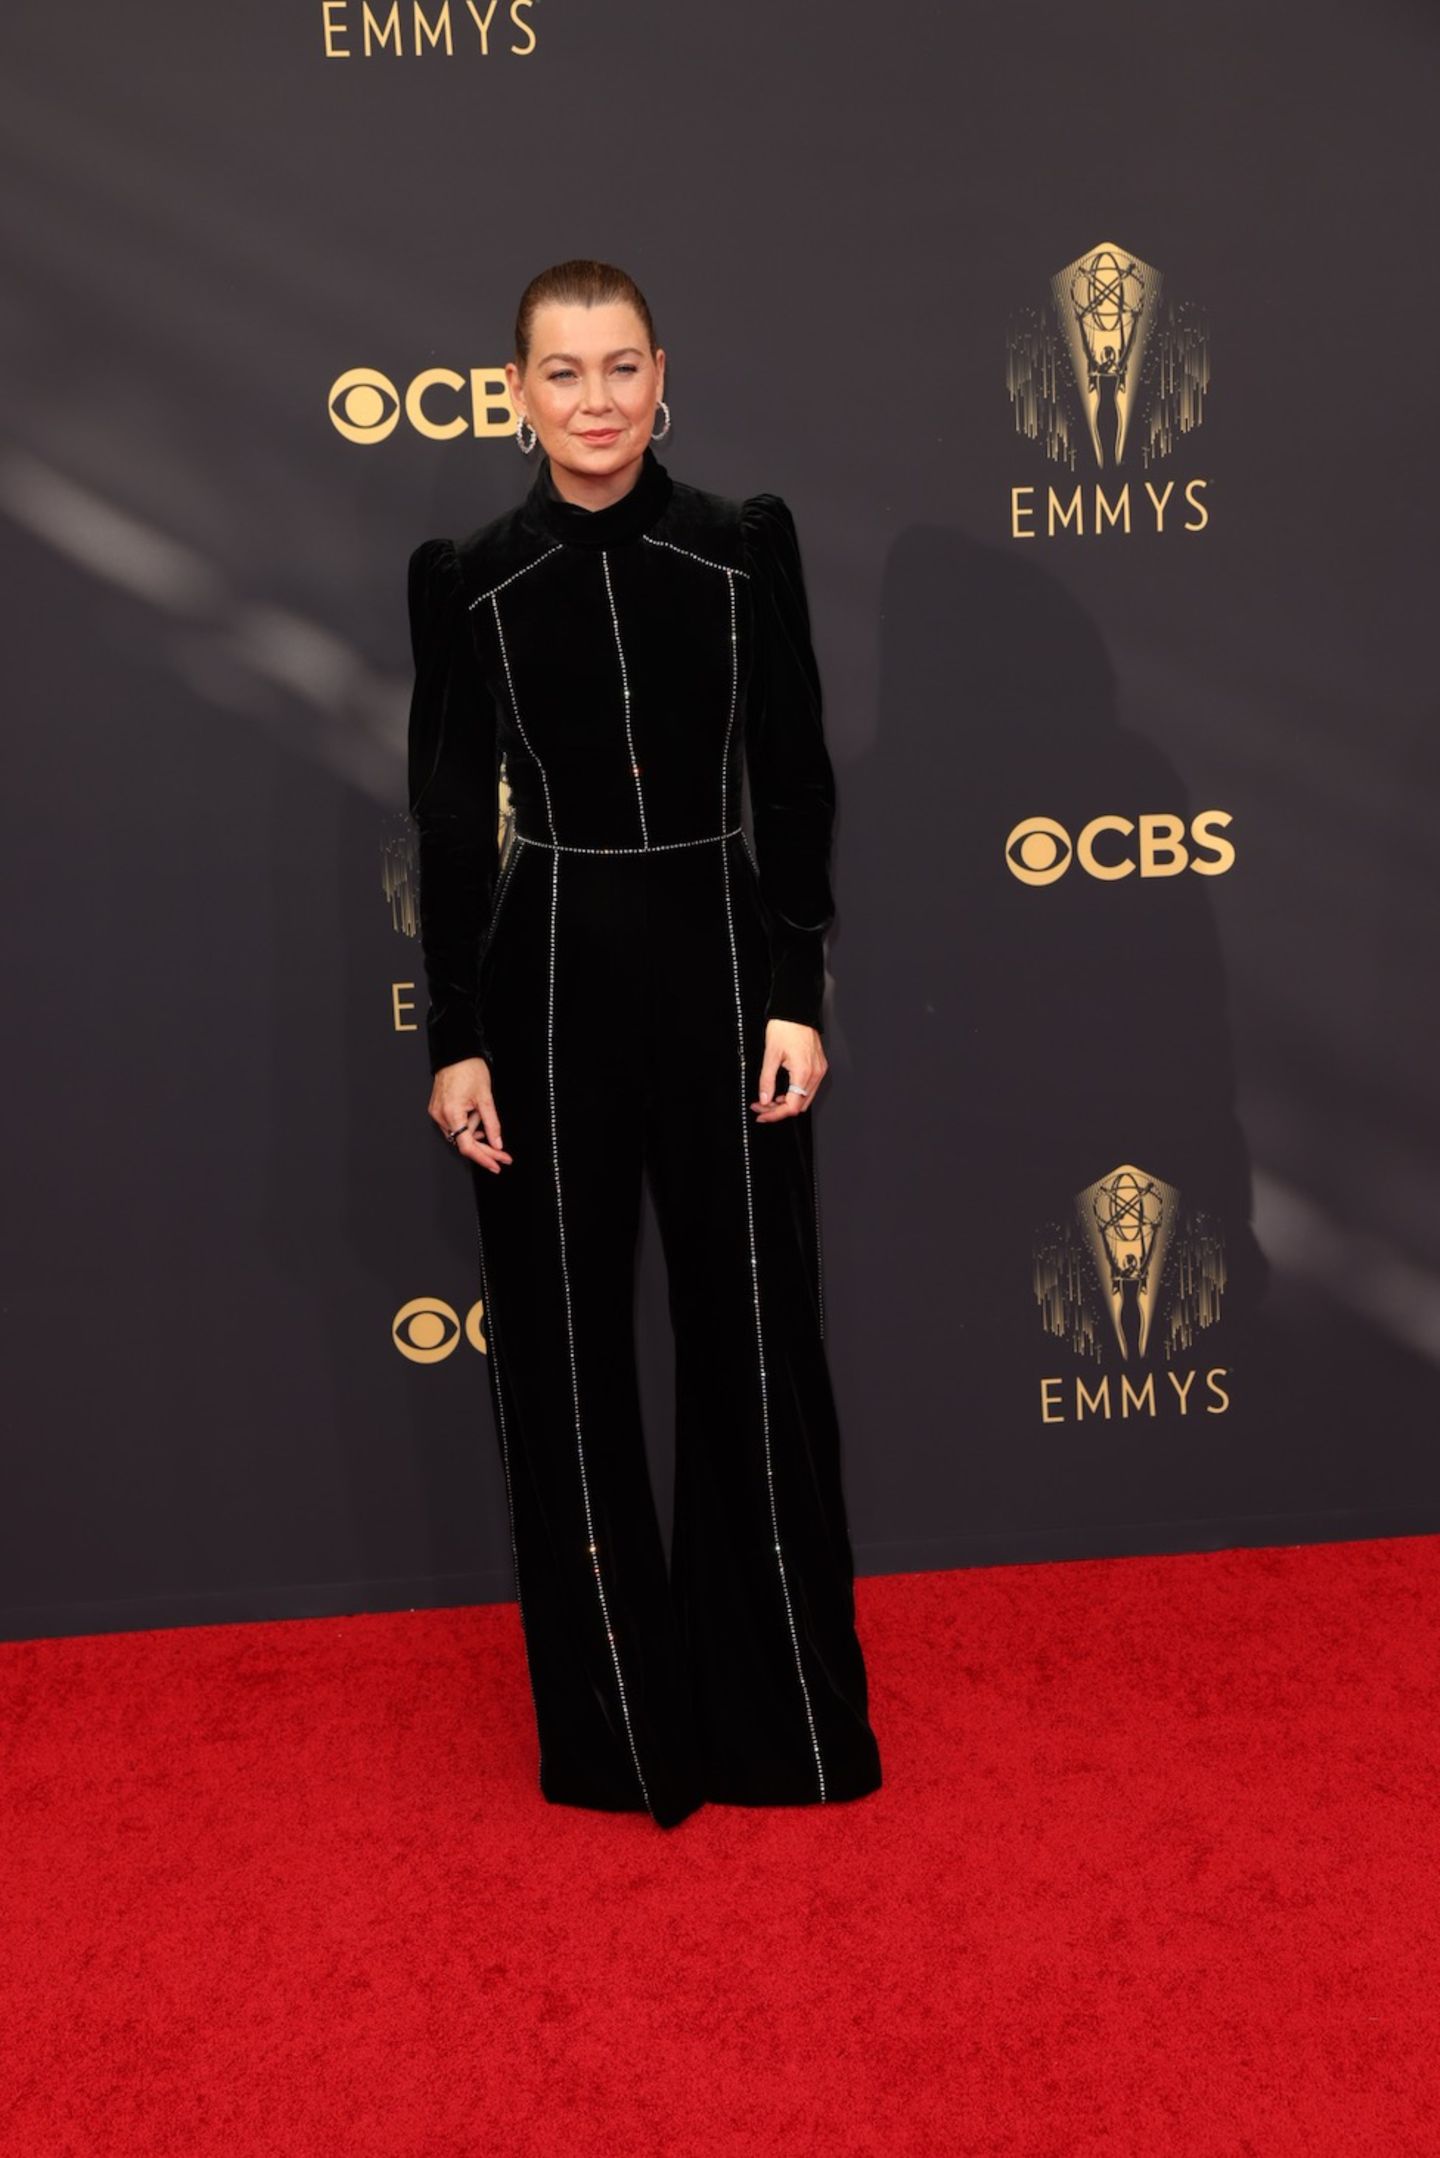 Hochgeschlossen, aber nicht minder sexy. "Grey's Anatomy"-Star Ellen Pompeo erscheint in einem schwarzen Samt-Kleid mit Strass-Applikationen bei den Emmy Awards 2021. Passend dazu trägt sie ihre Haare streng zu einem Zopf gebunden.